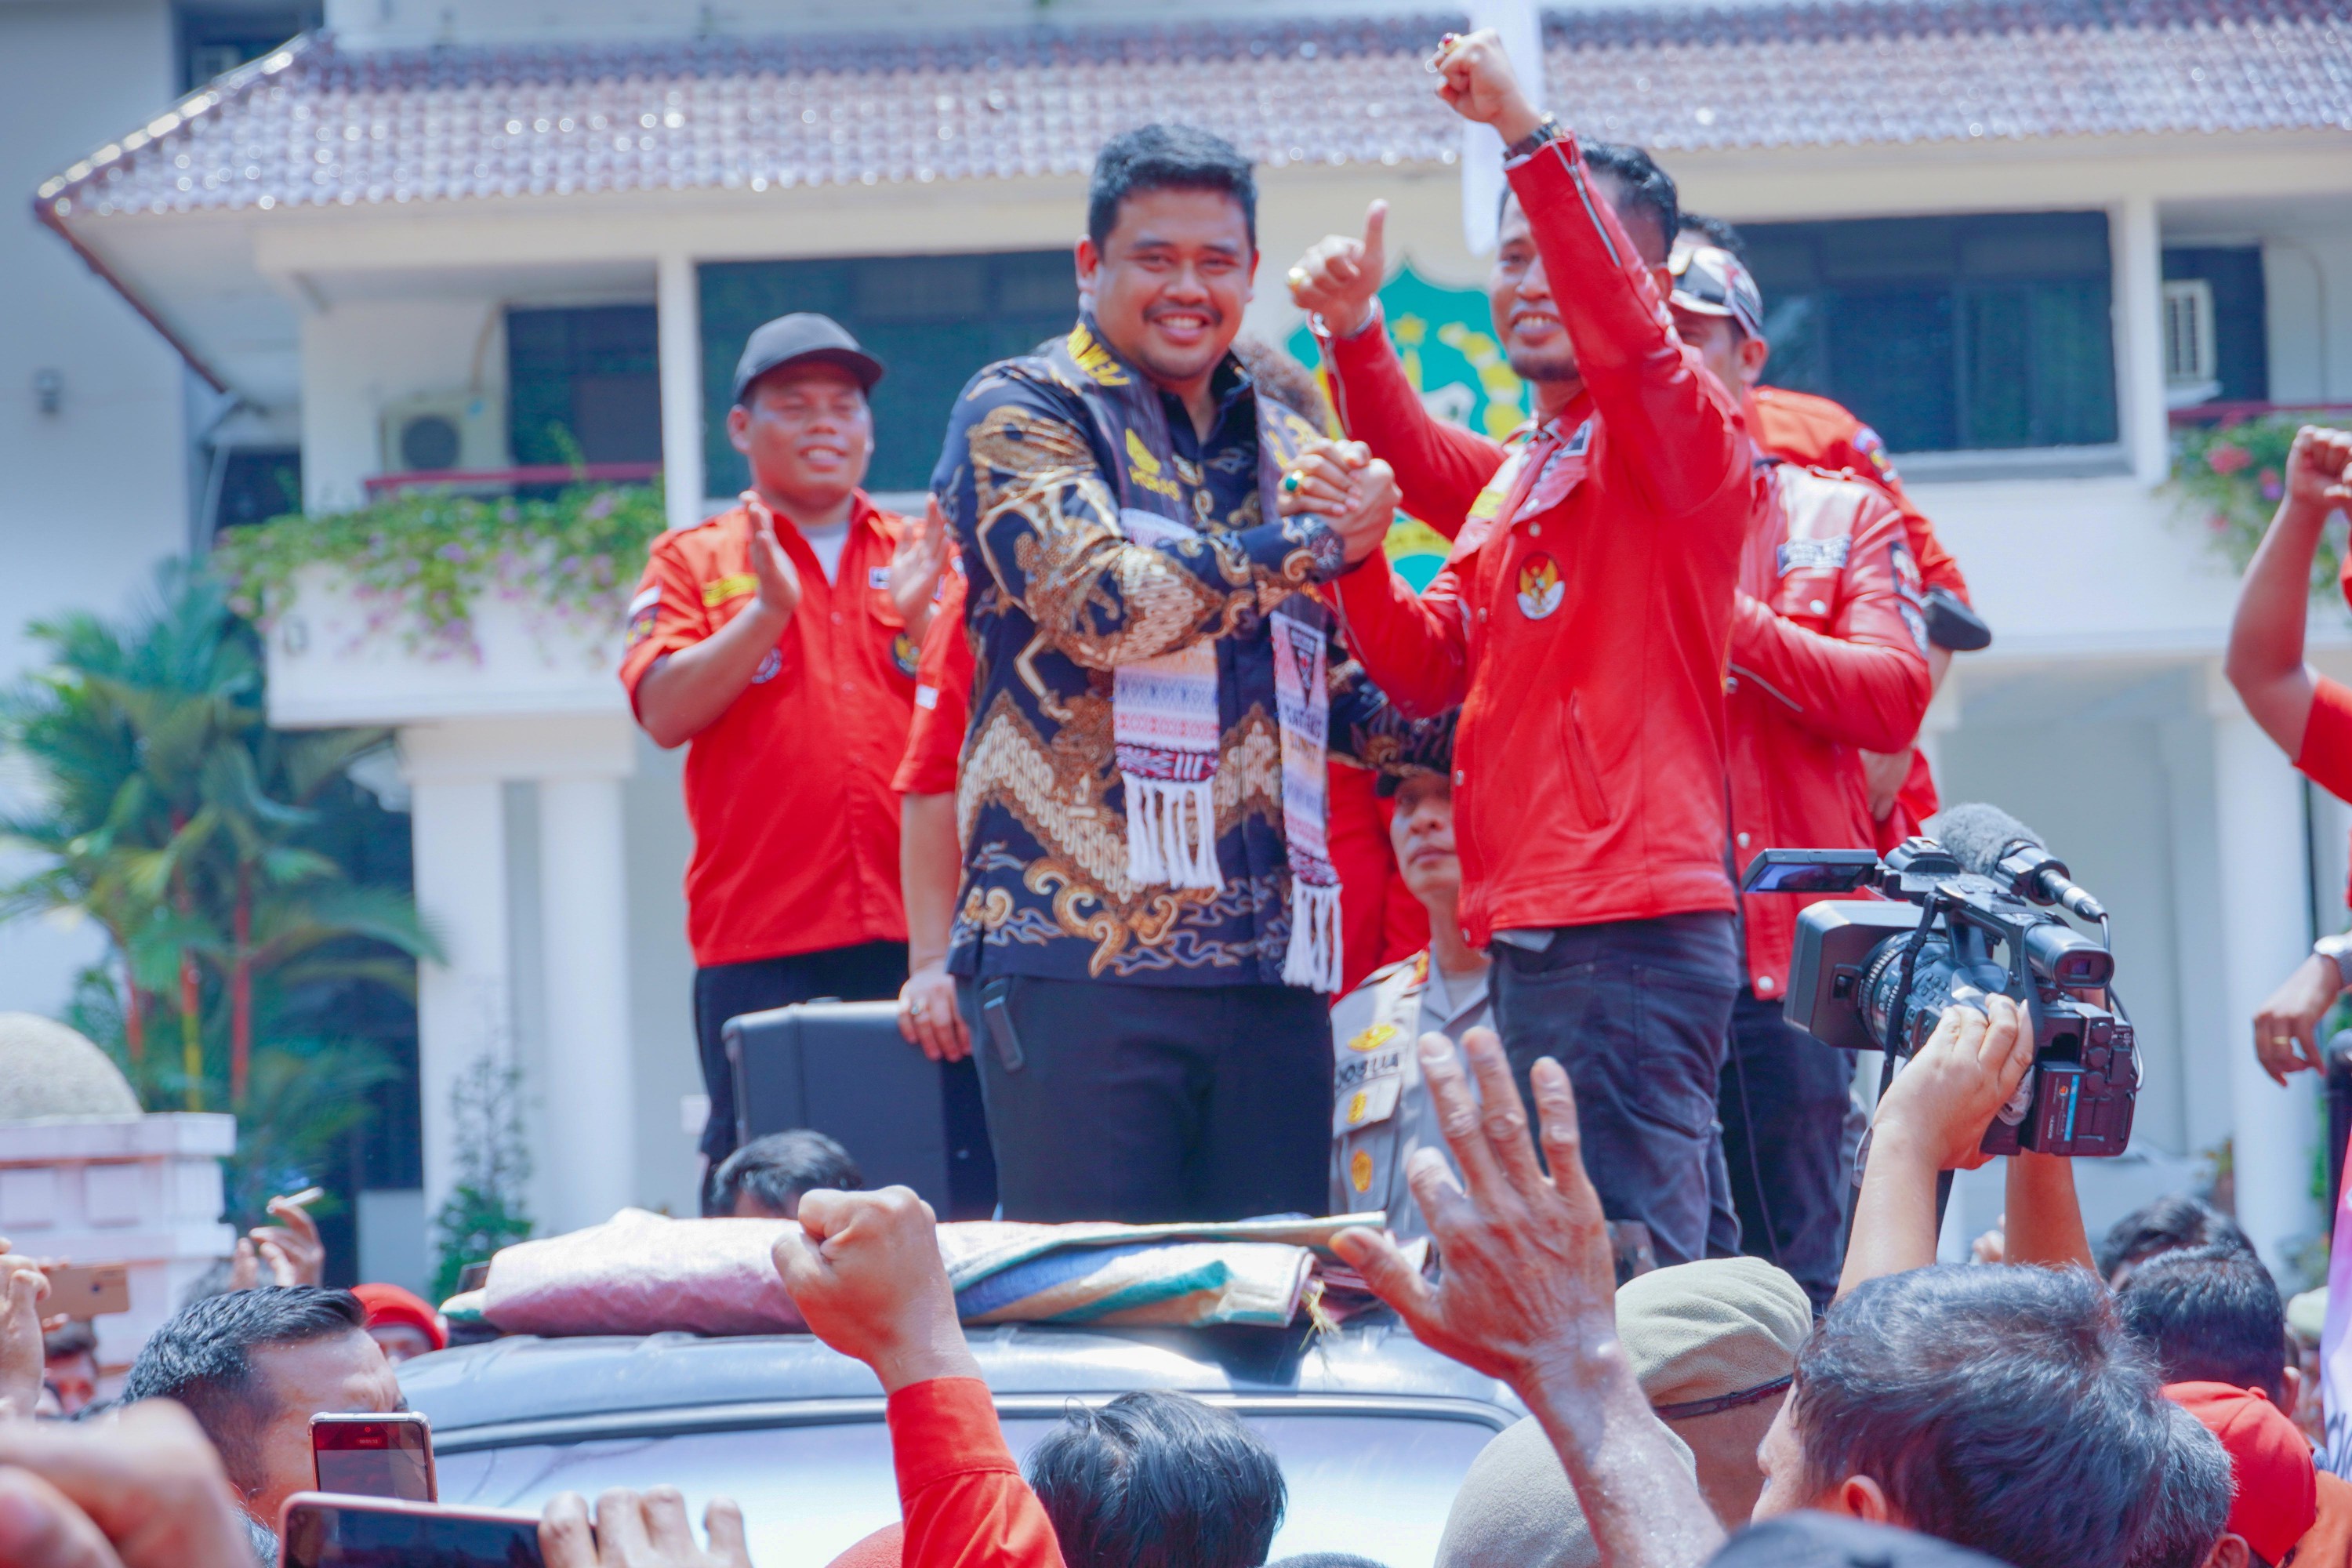 Wali Kota Medan Bobby Nasution Menemui Ratusan Massa Yang Tergabung Dalam Pemuda Batak Bersatu (PBB) Saat Menggelar Aksi Damai di Depan Balai Kota Medan, Kamis (8/6)